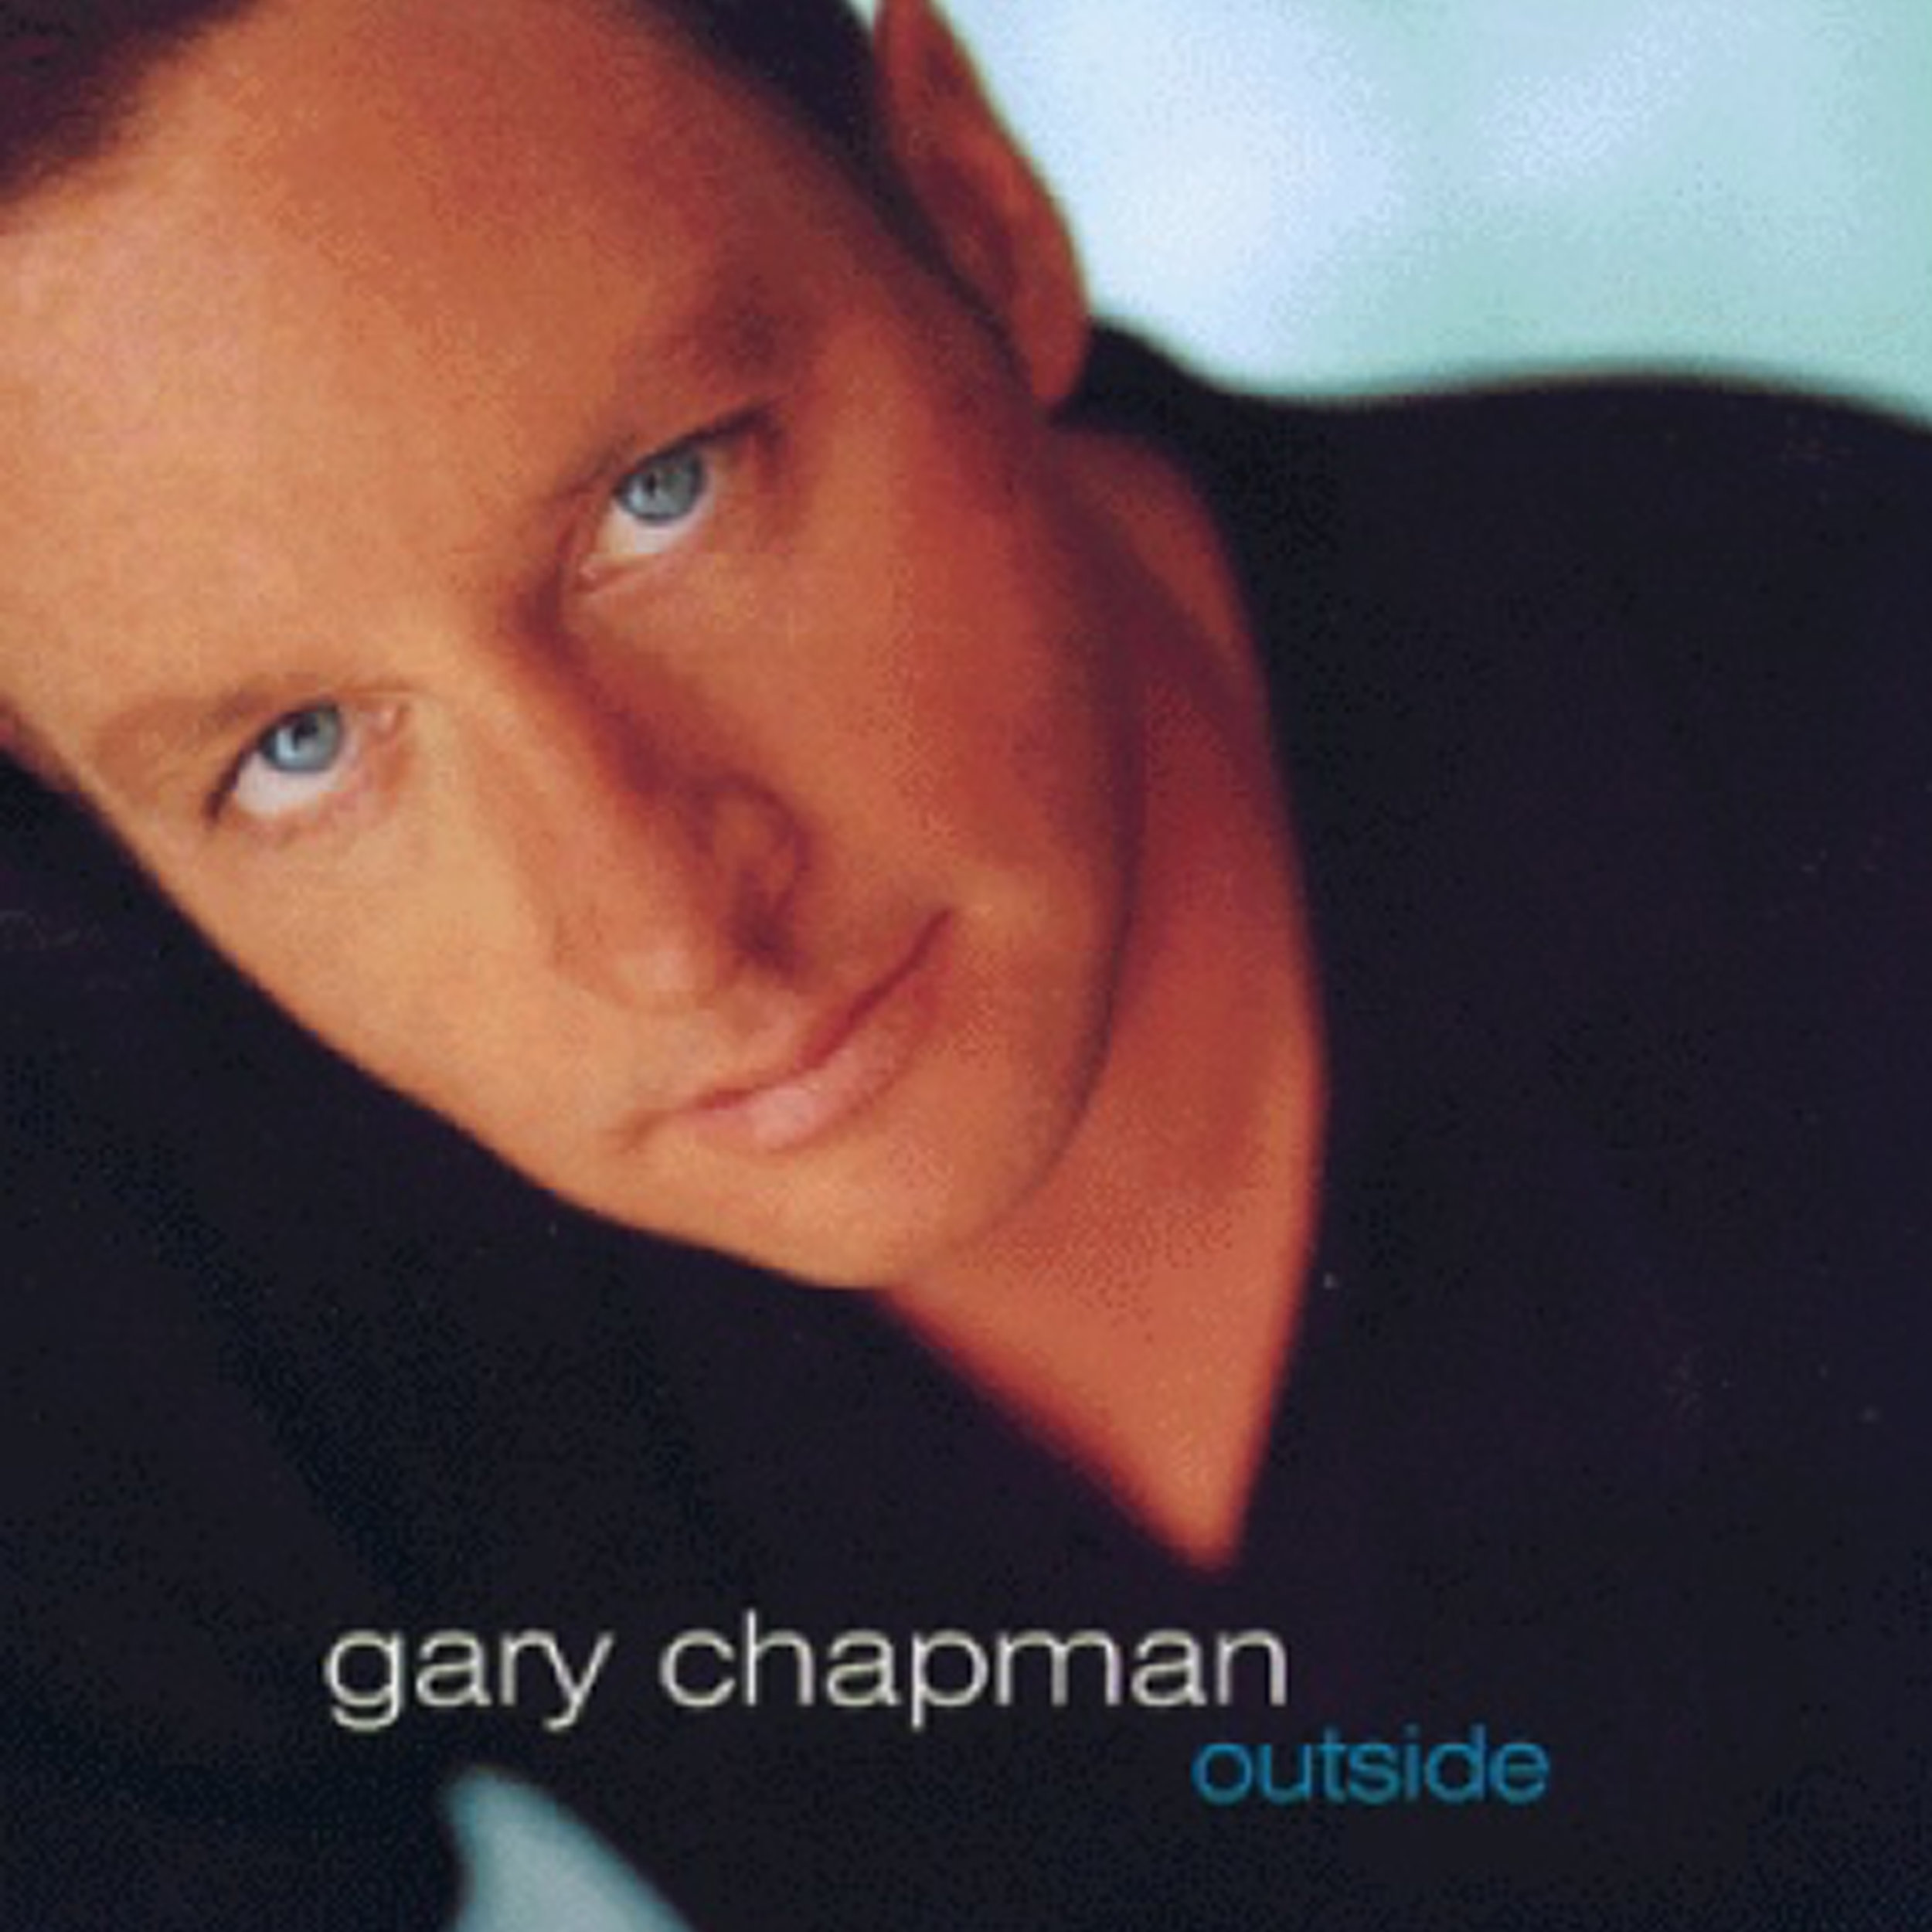 Gary Chapman. Gary Chapman (musician). Gary Chapman (author). Гэри Чепмен фотографии.